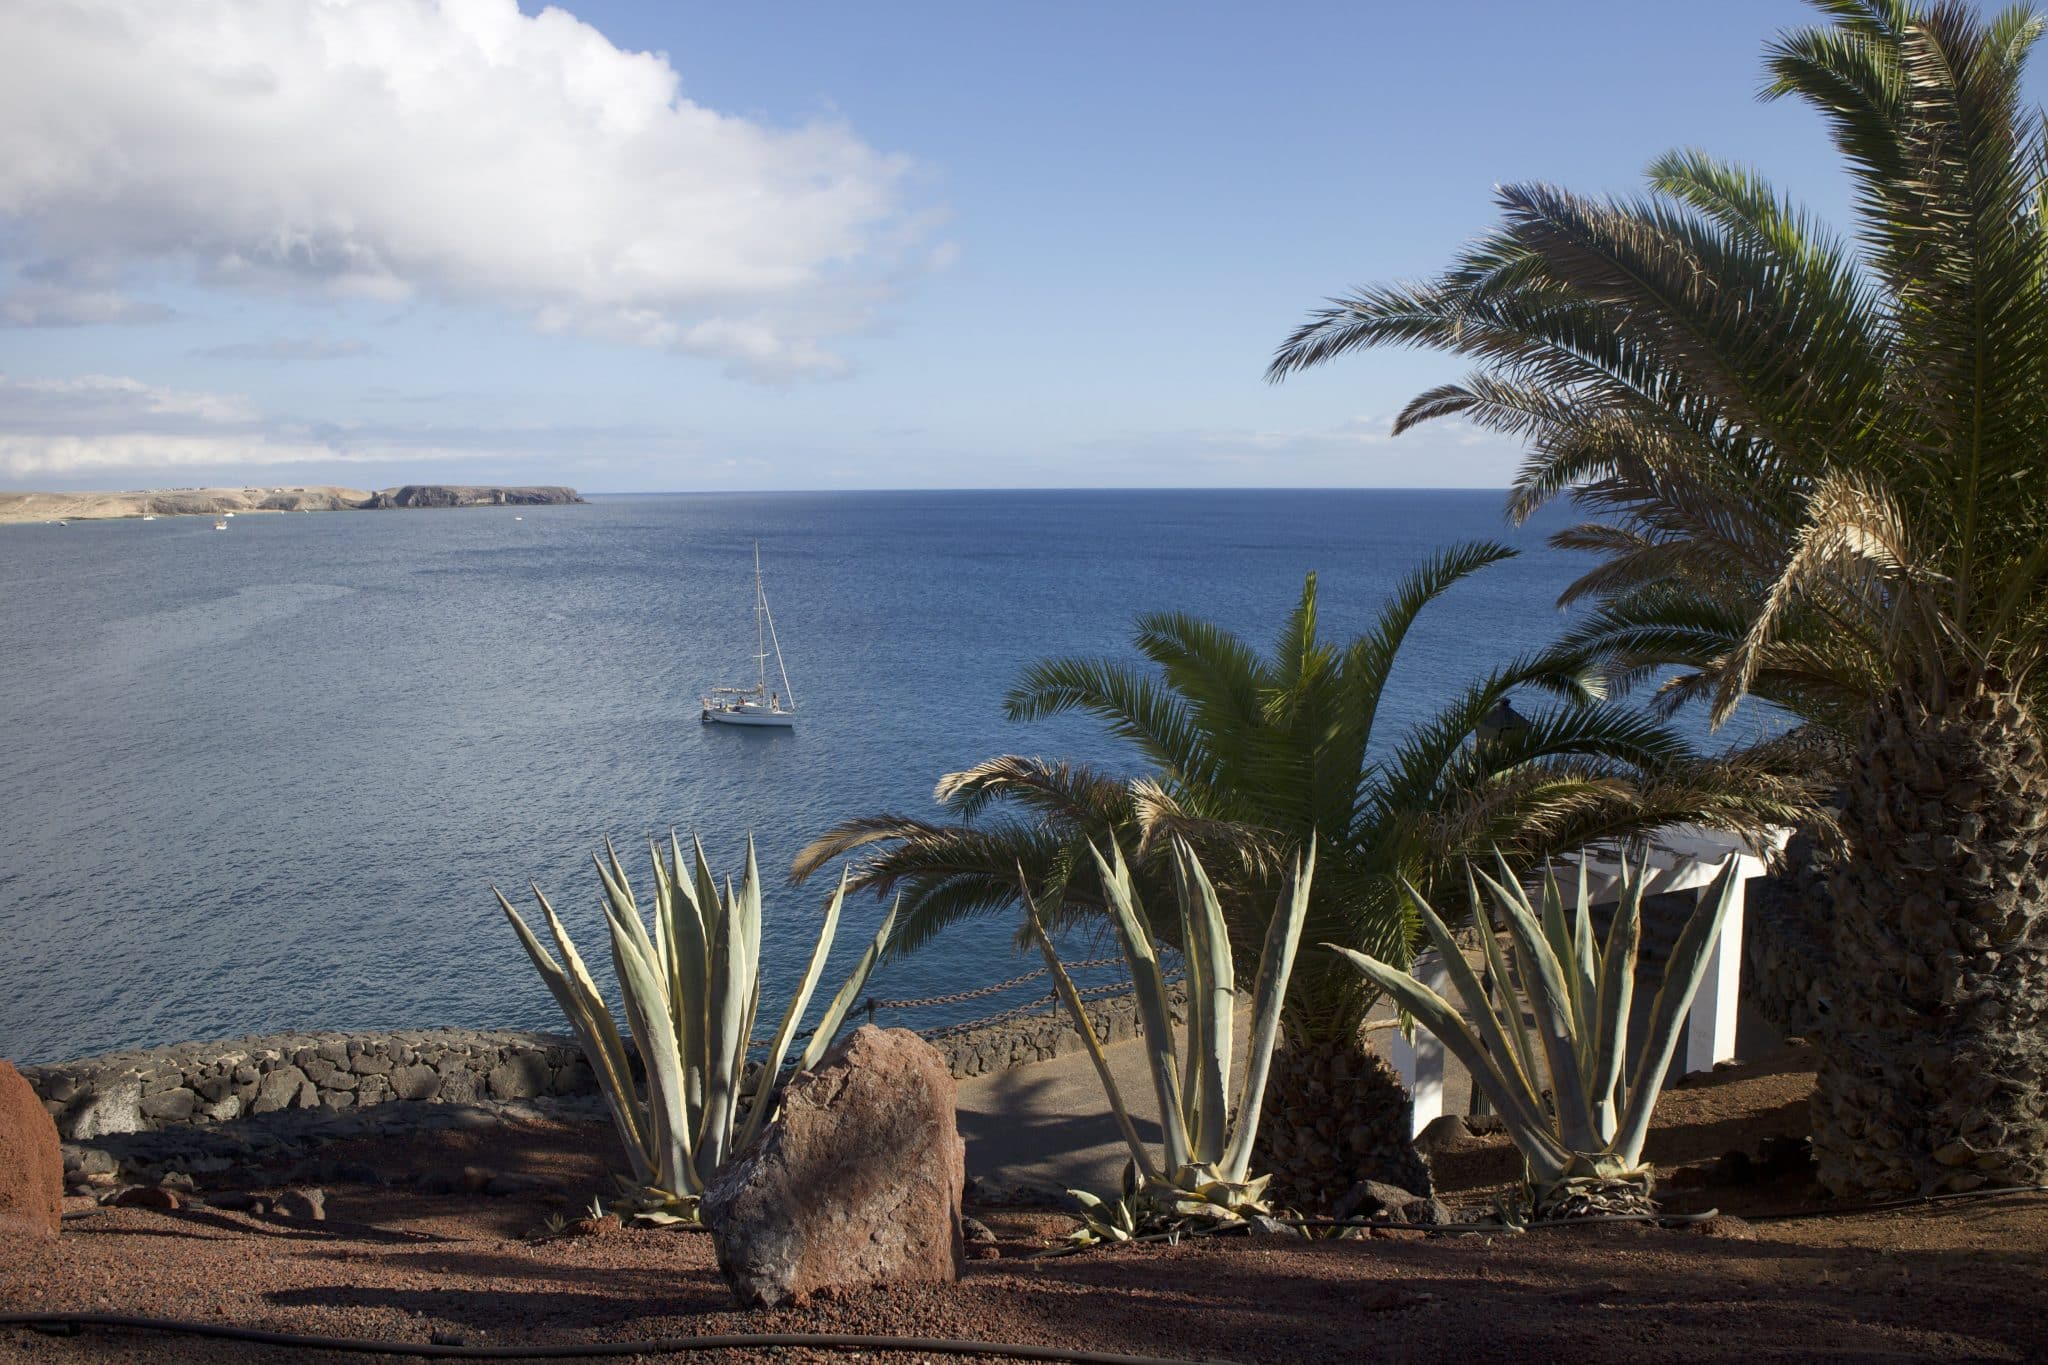 Lanzarote rejserapport – tips, oplevelser og højdepunkter